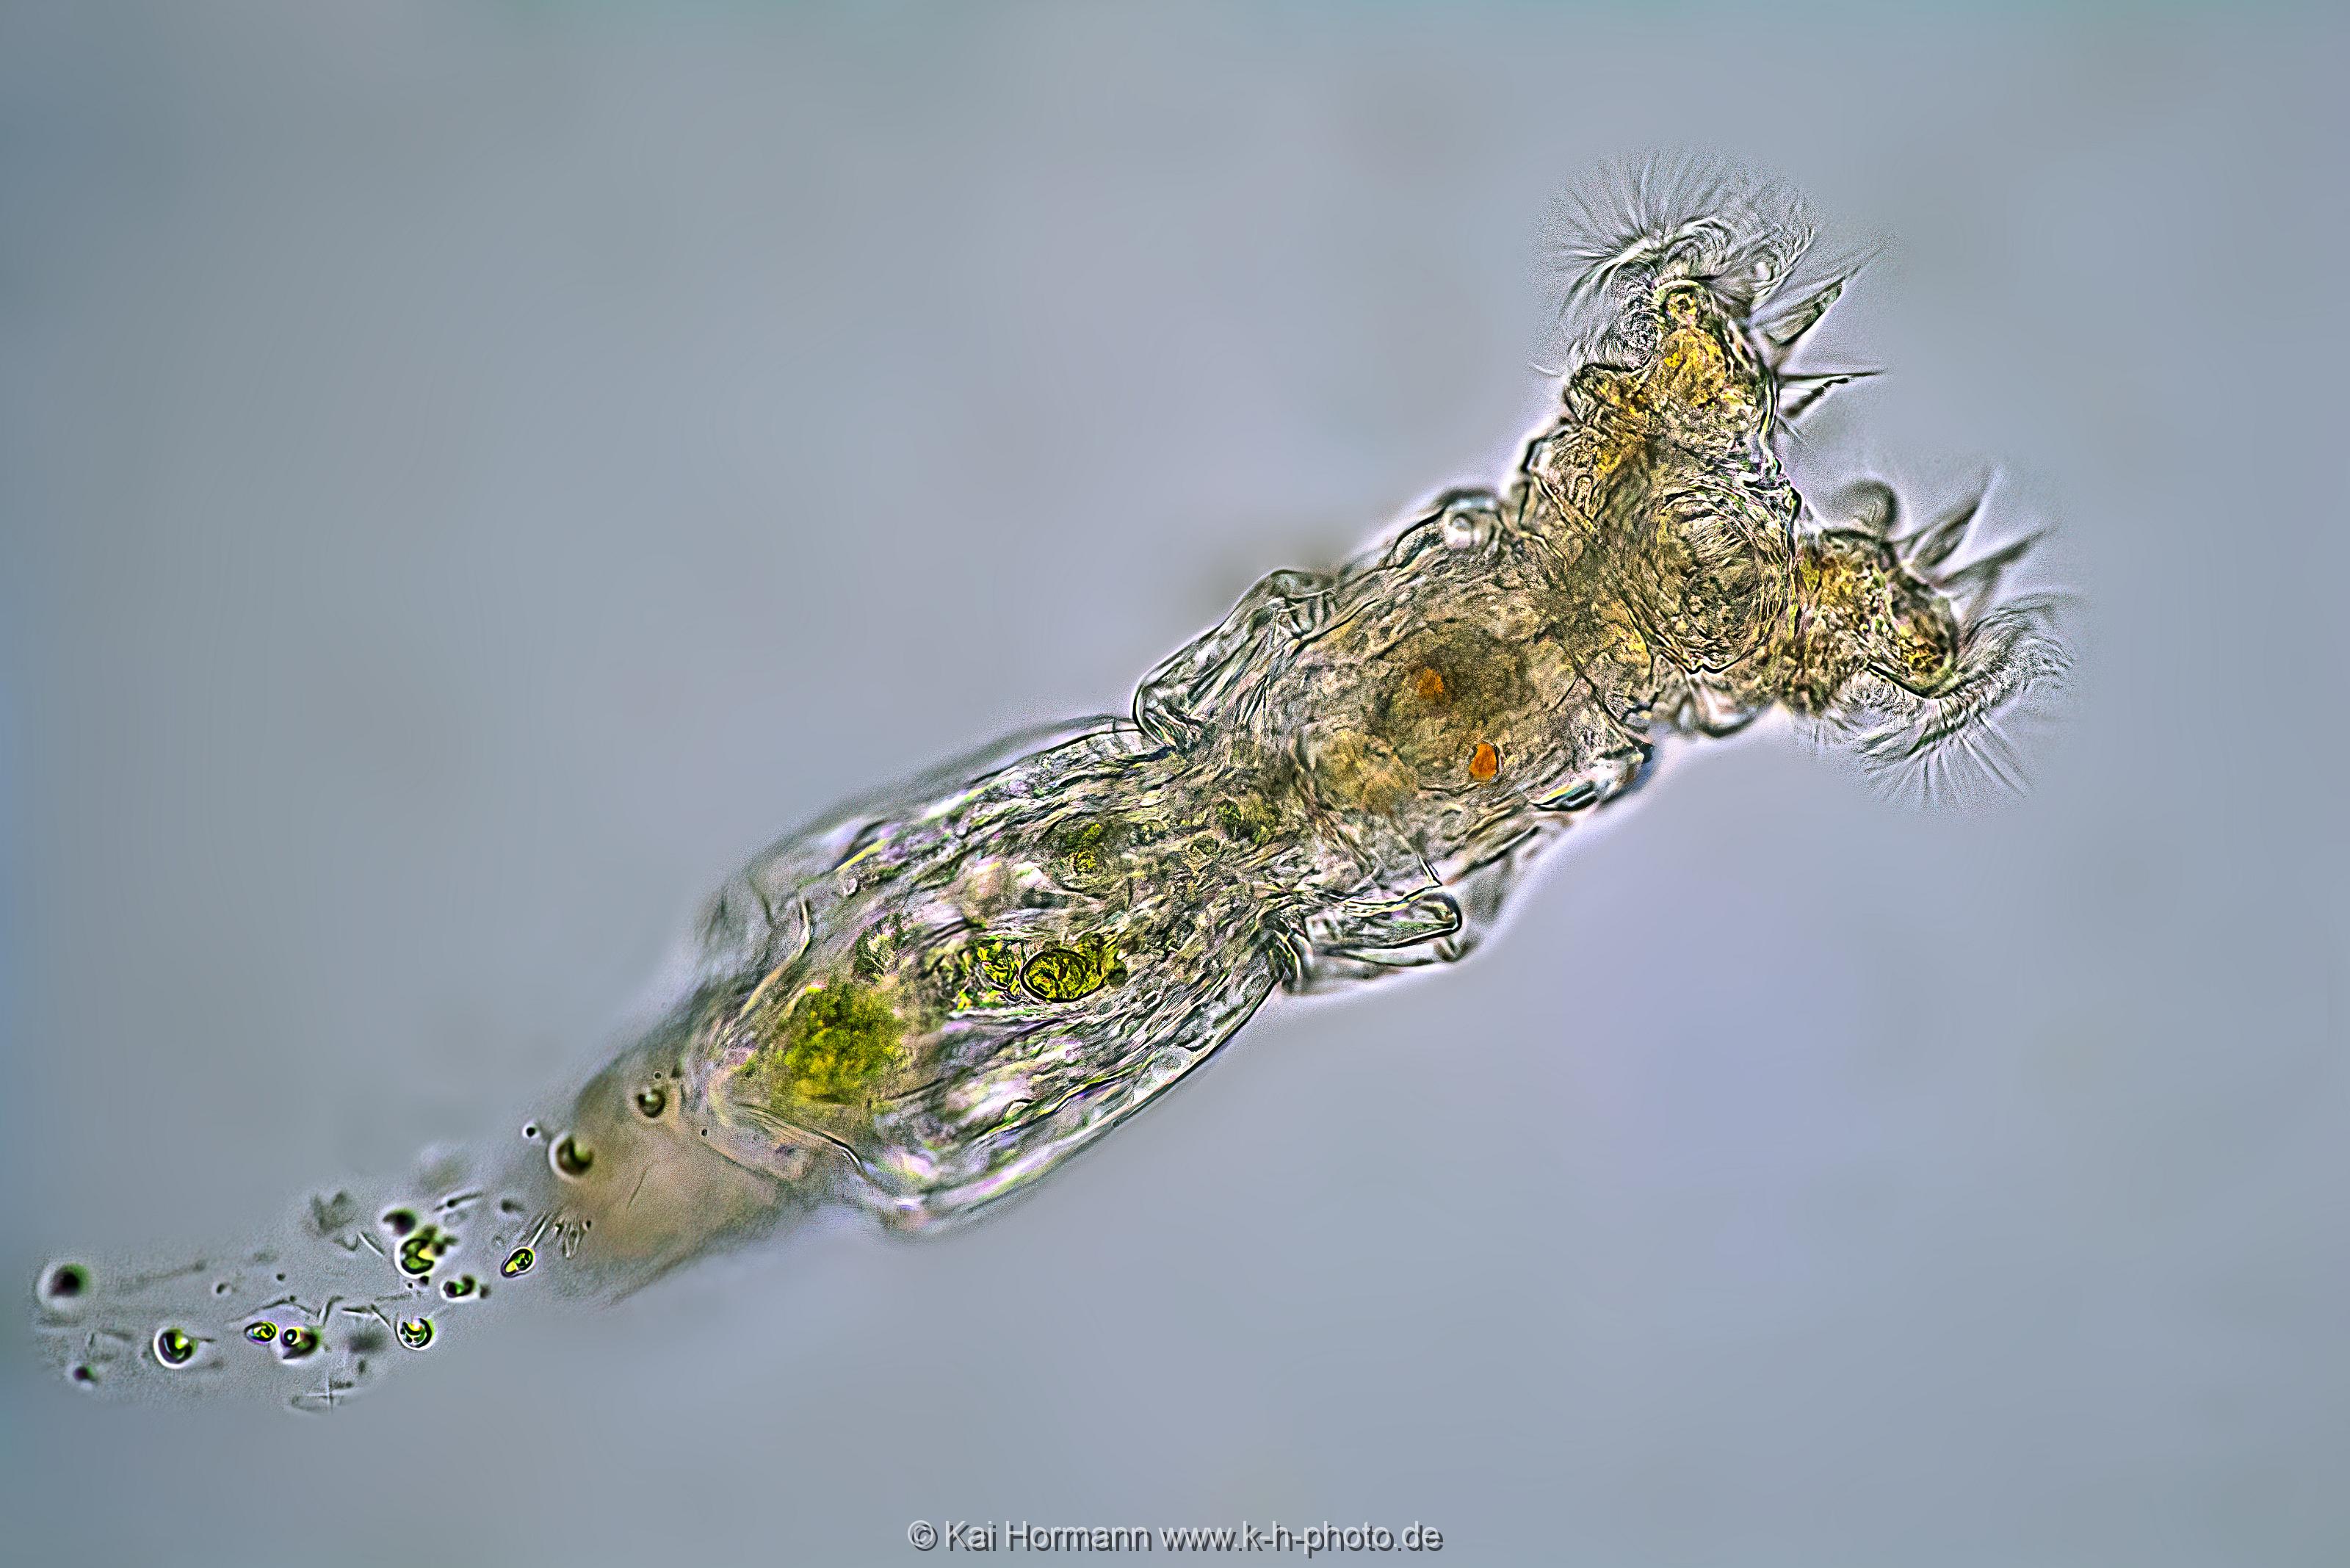 Rädertierchen. Mikrofotografie: Mikroskopische Aufnahmen von Einzellern, Algen und Kleinstlebewesen.